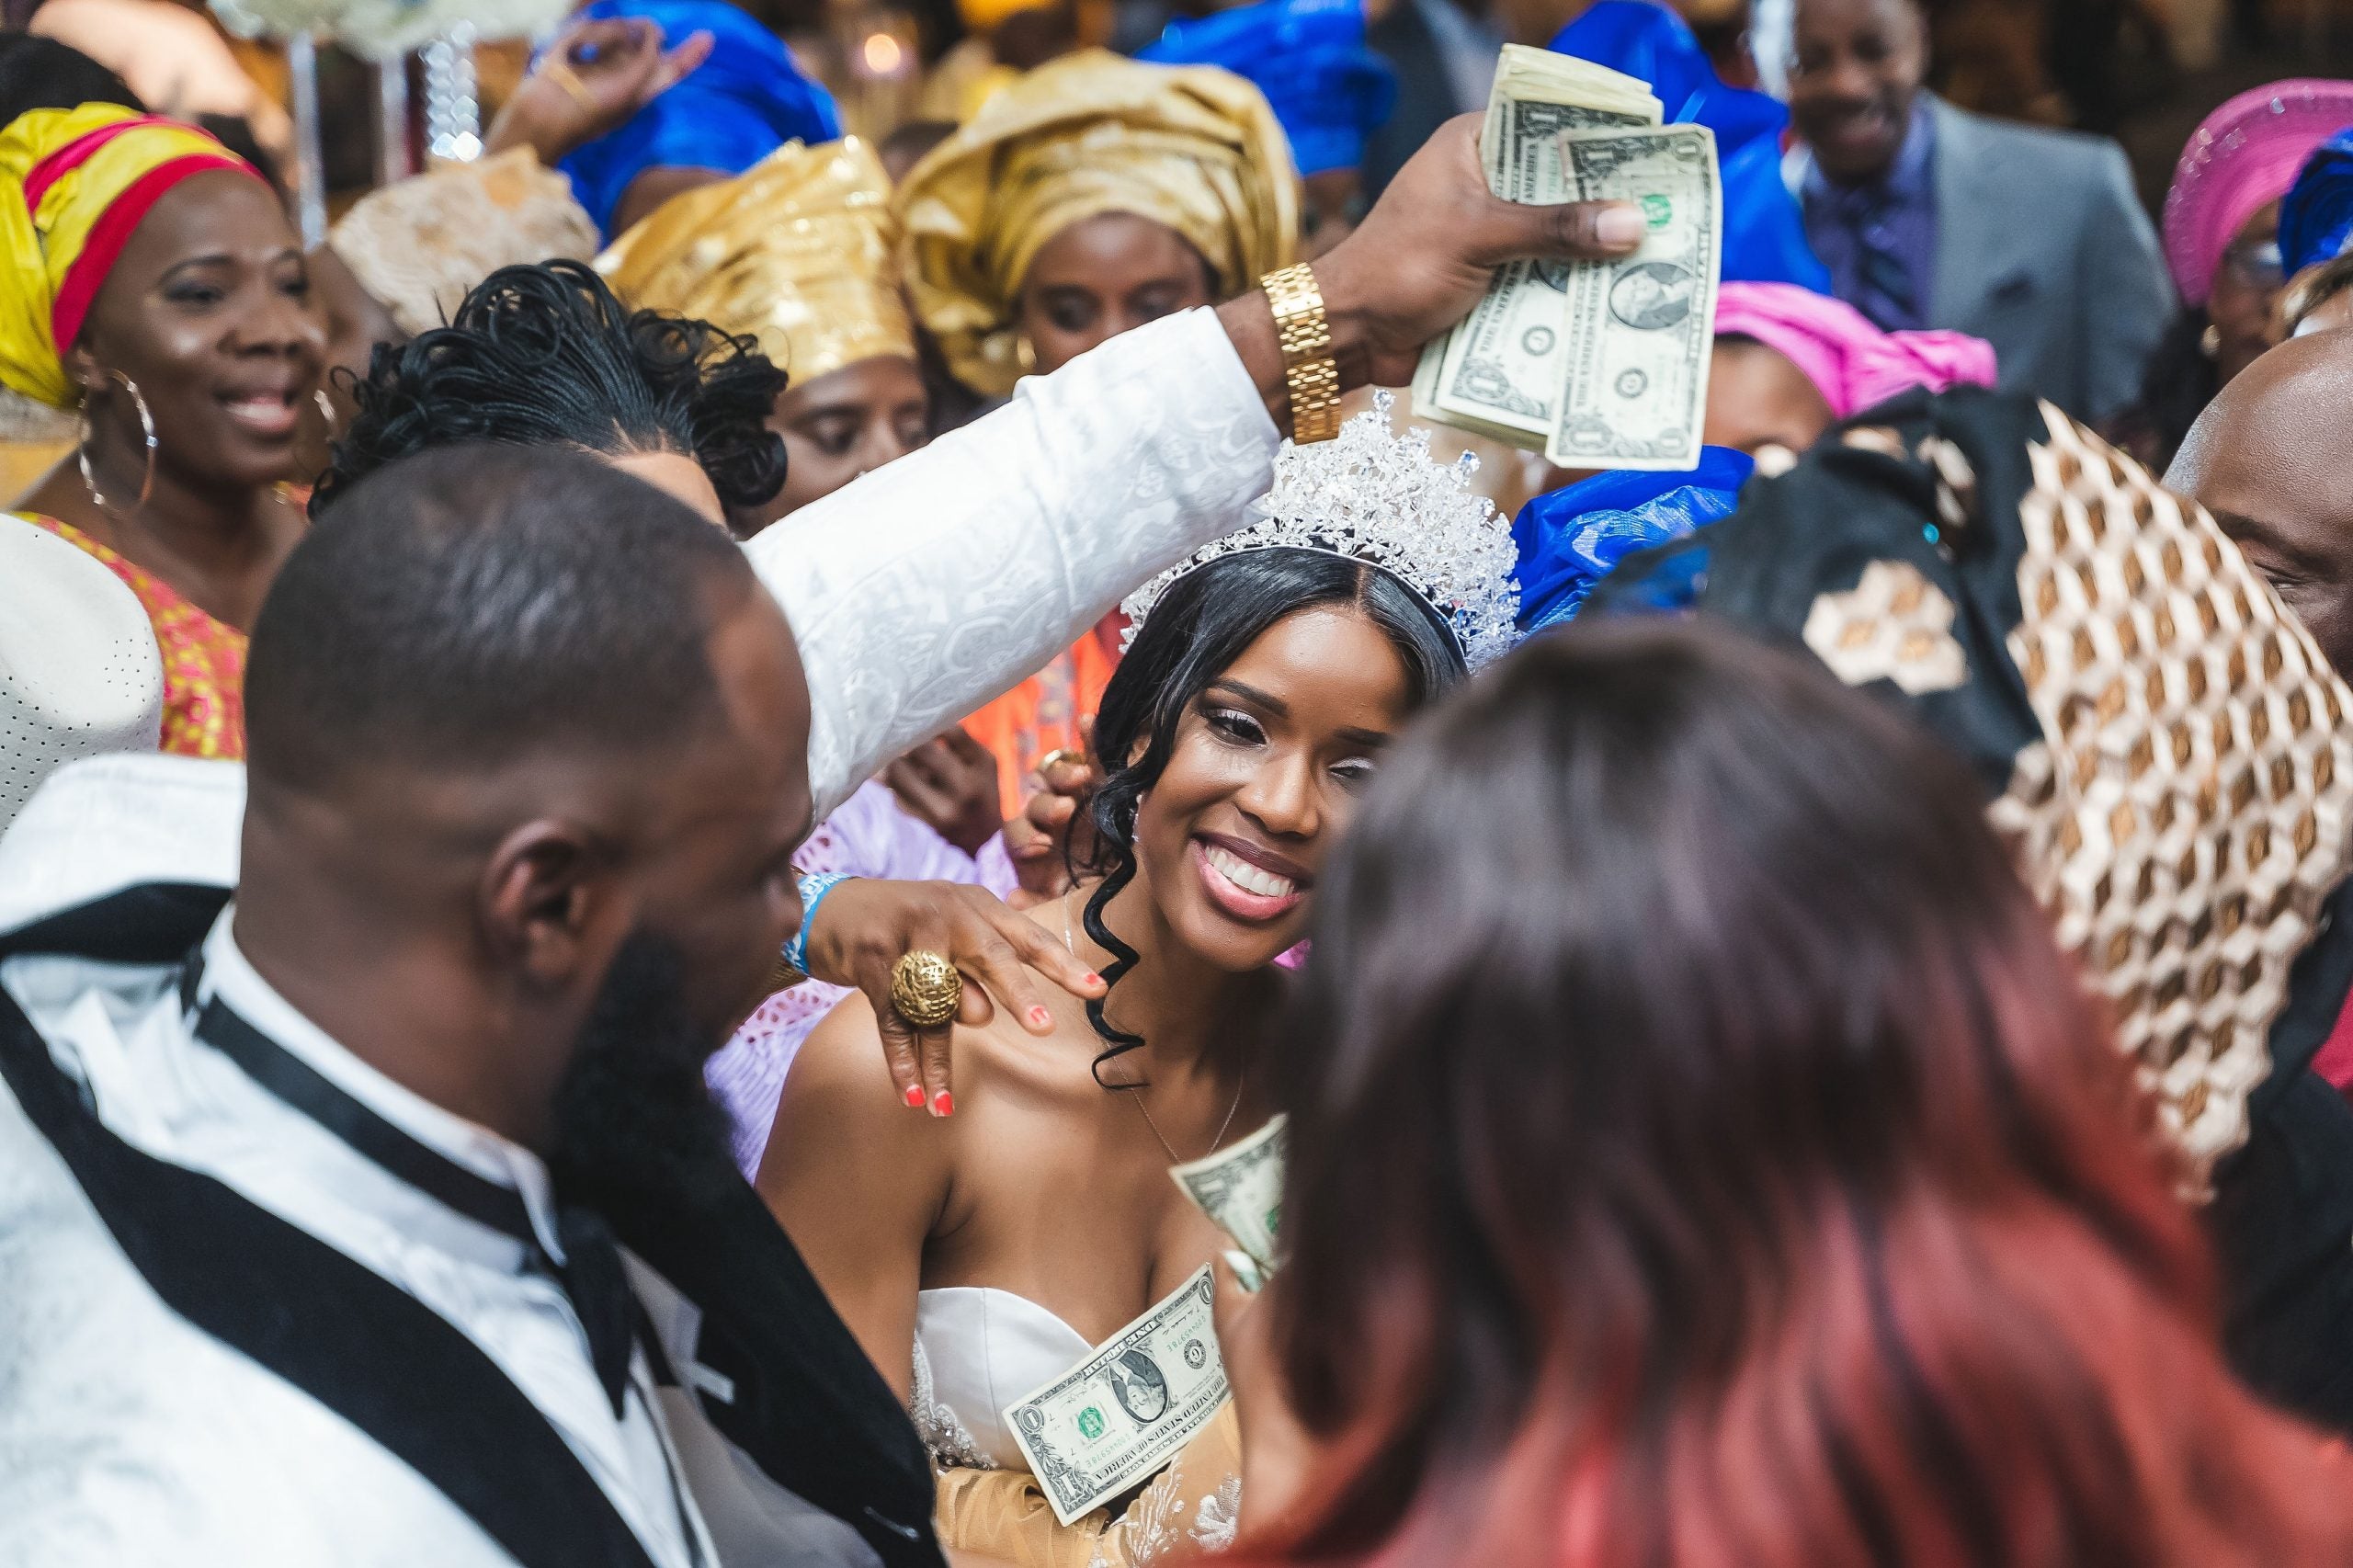 Bridal Bliss: AK and Tida's Fairytale Wedding Felt Like A Dream